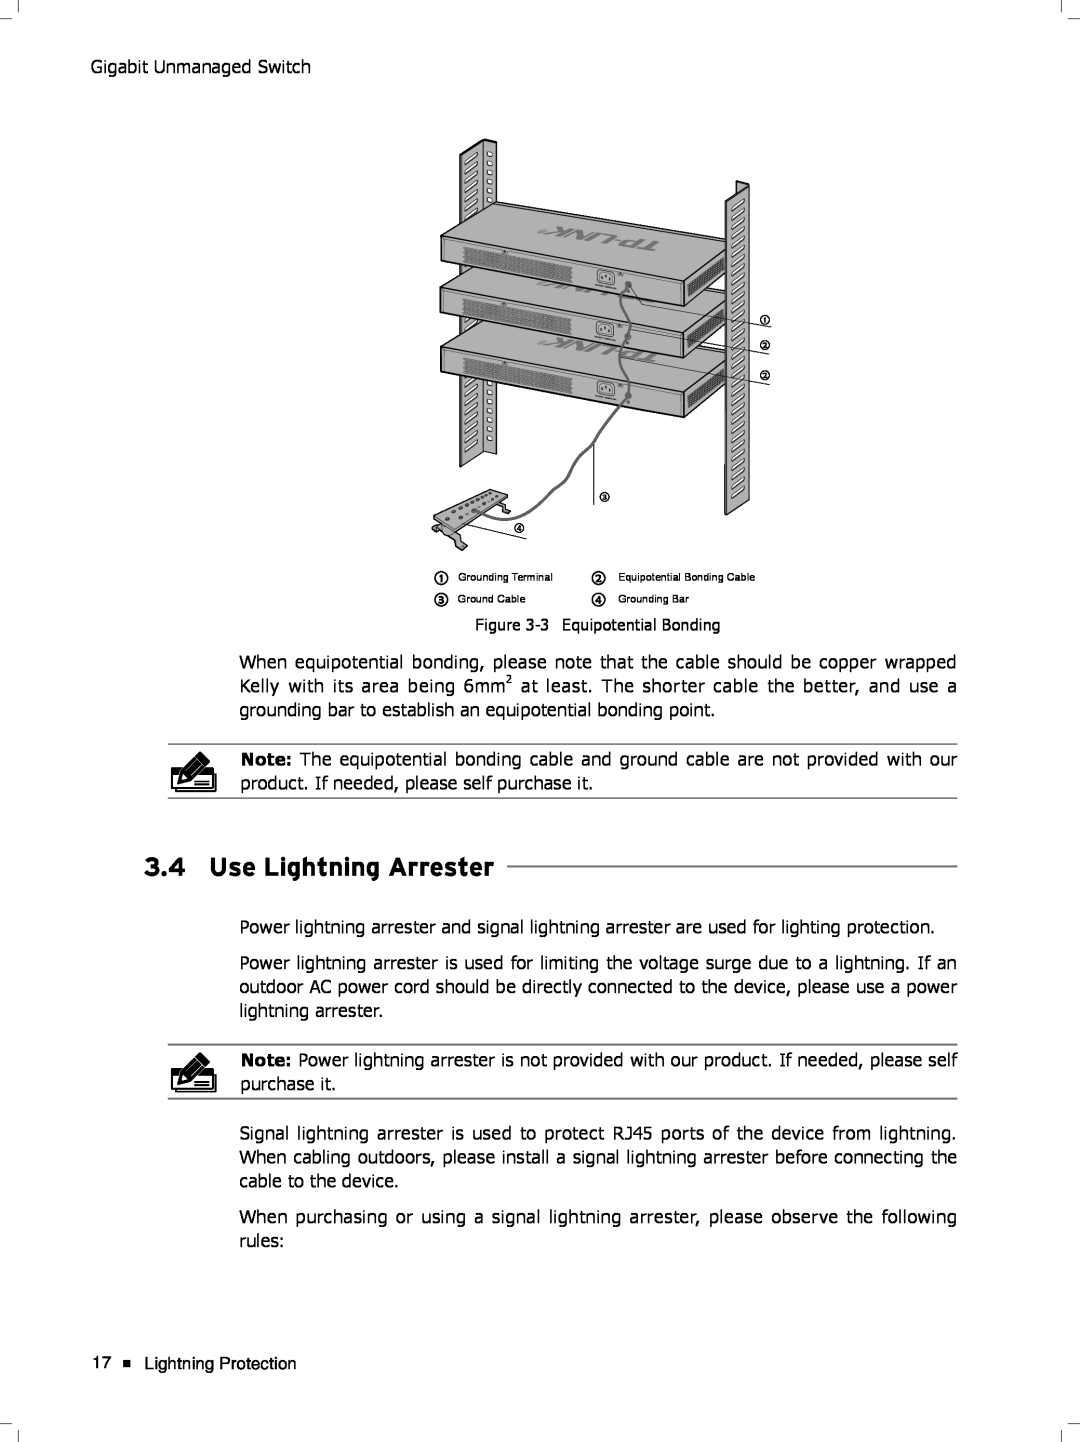 TP-Link tl-sg1048 manual Use Lightning Arrester, Lightning Protection 